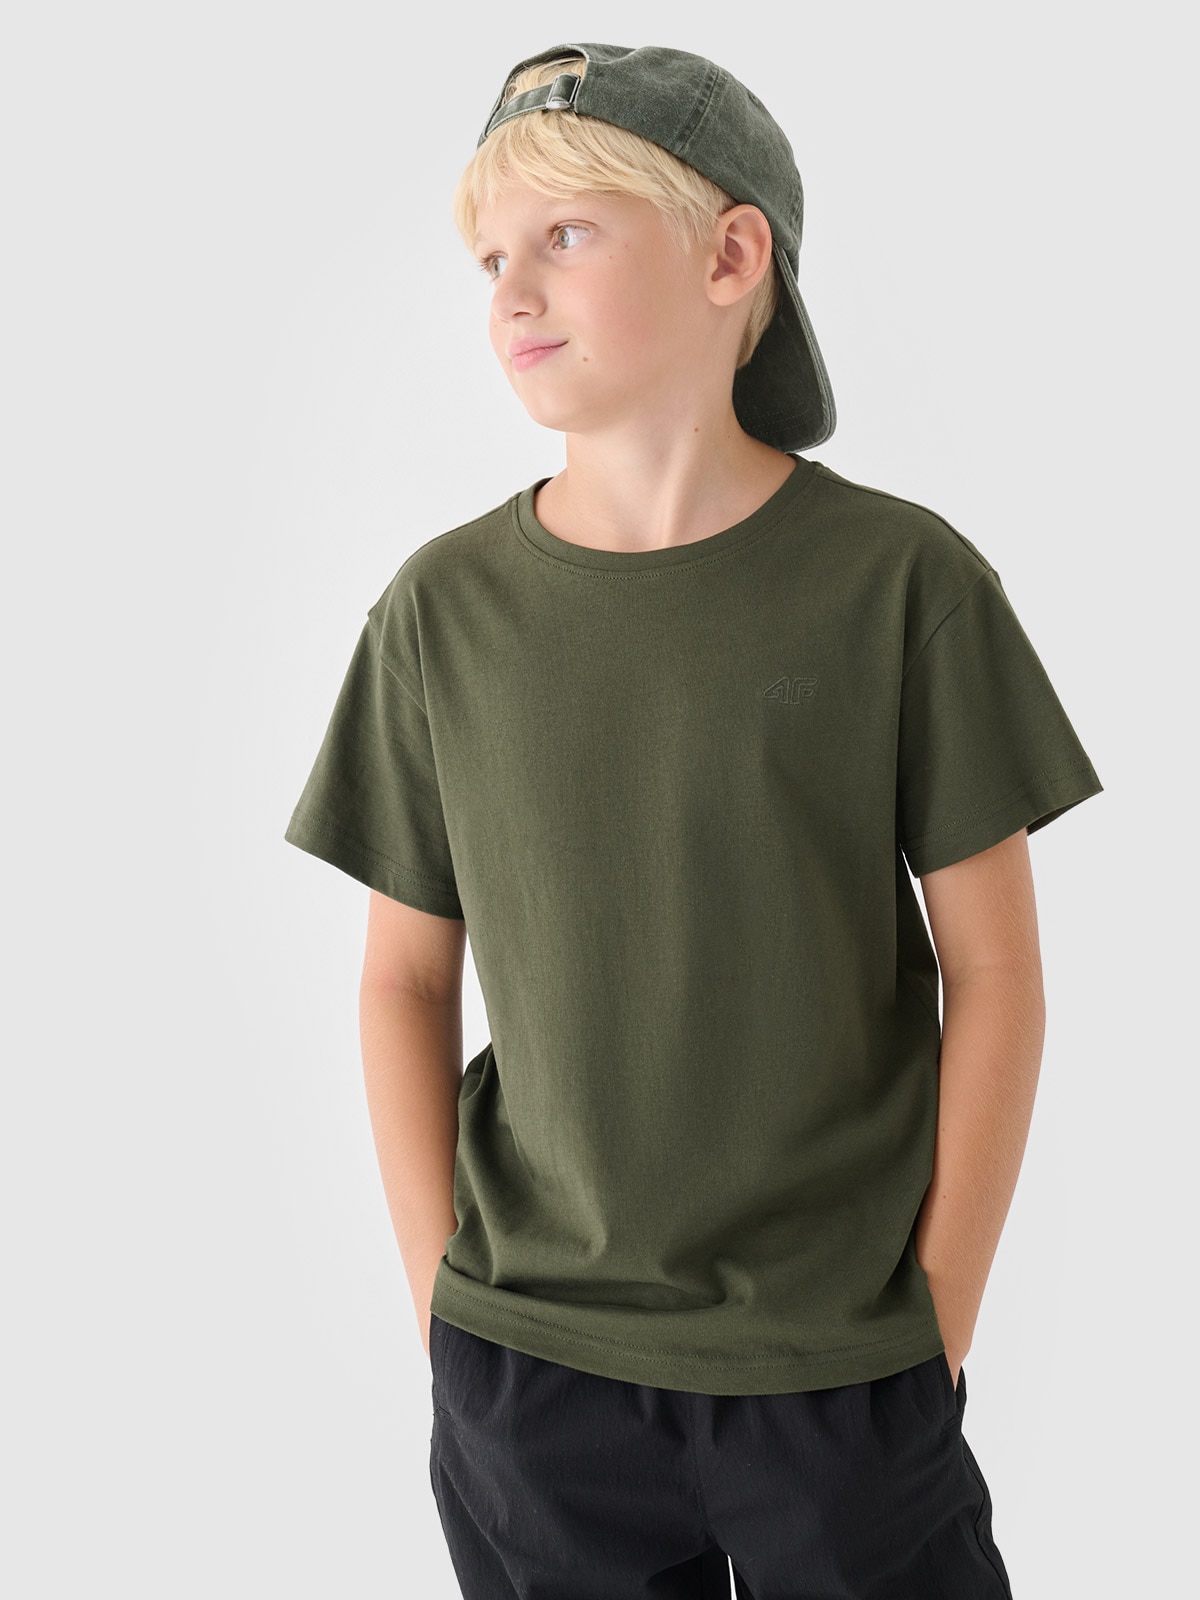 Chlapecké hladké tričko - olivové/ khaki